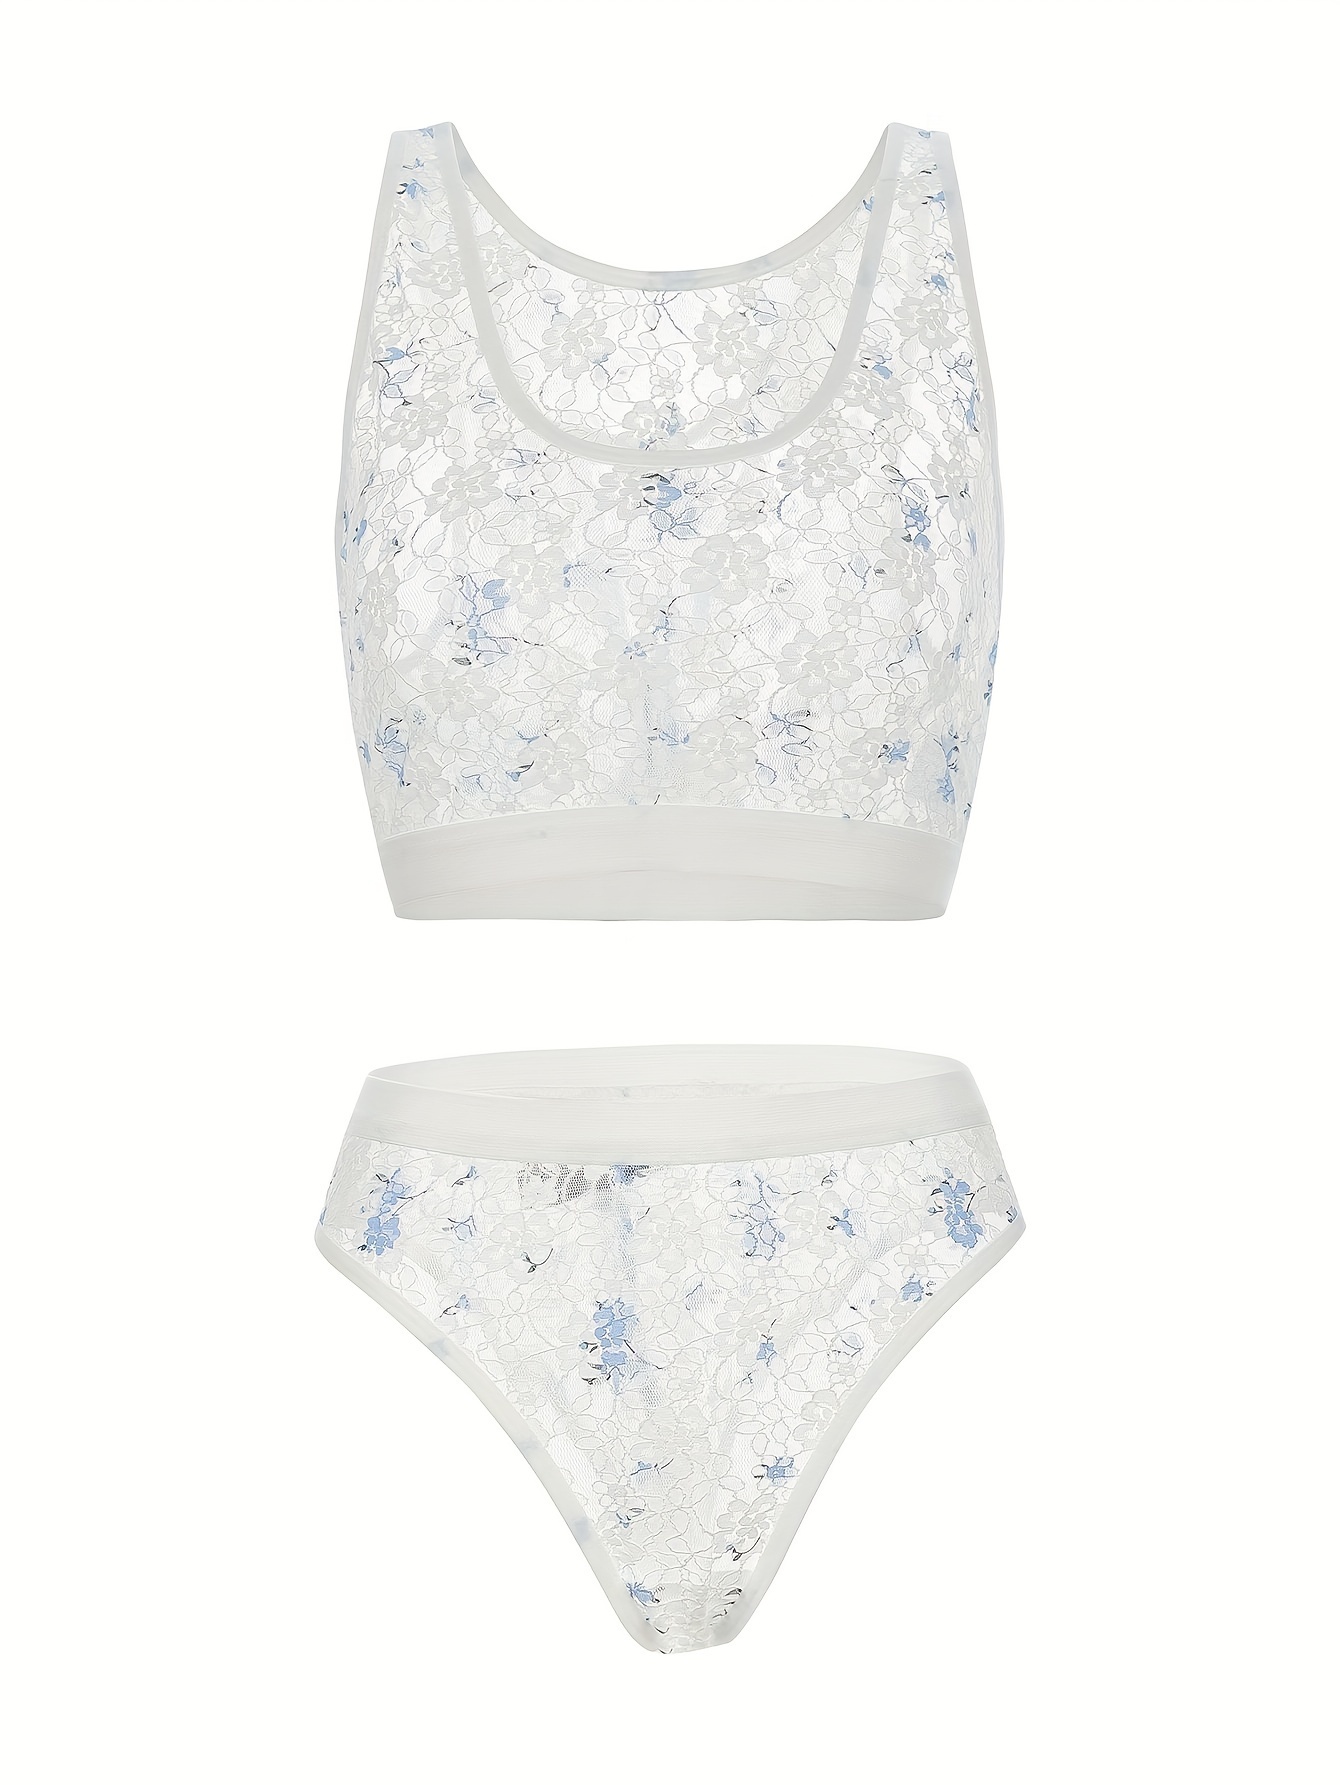 Floral Lace Lingerie Set, Cut Out Unlined Bra & Panties, Women's Sexy  Lingerie & Underwear